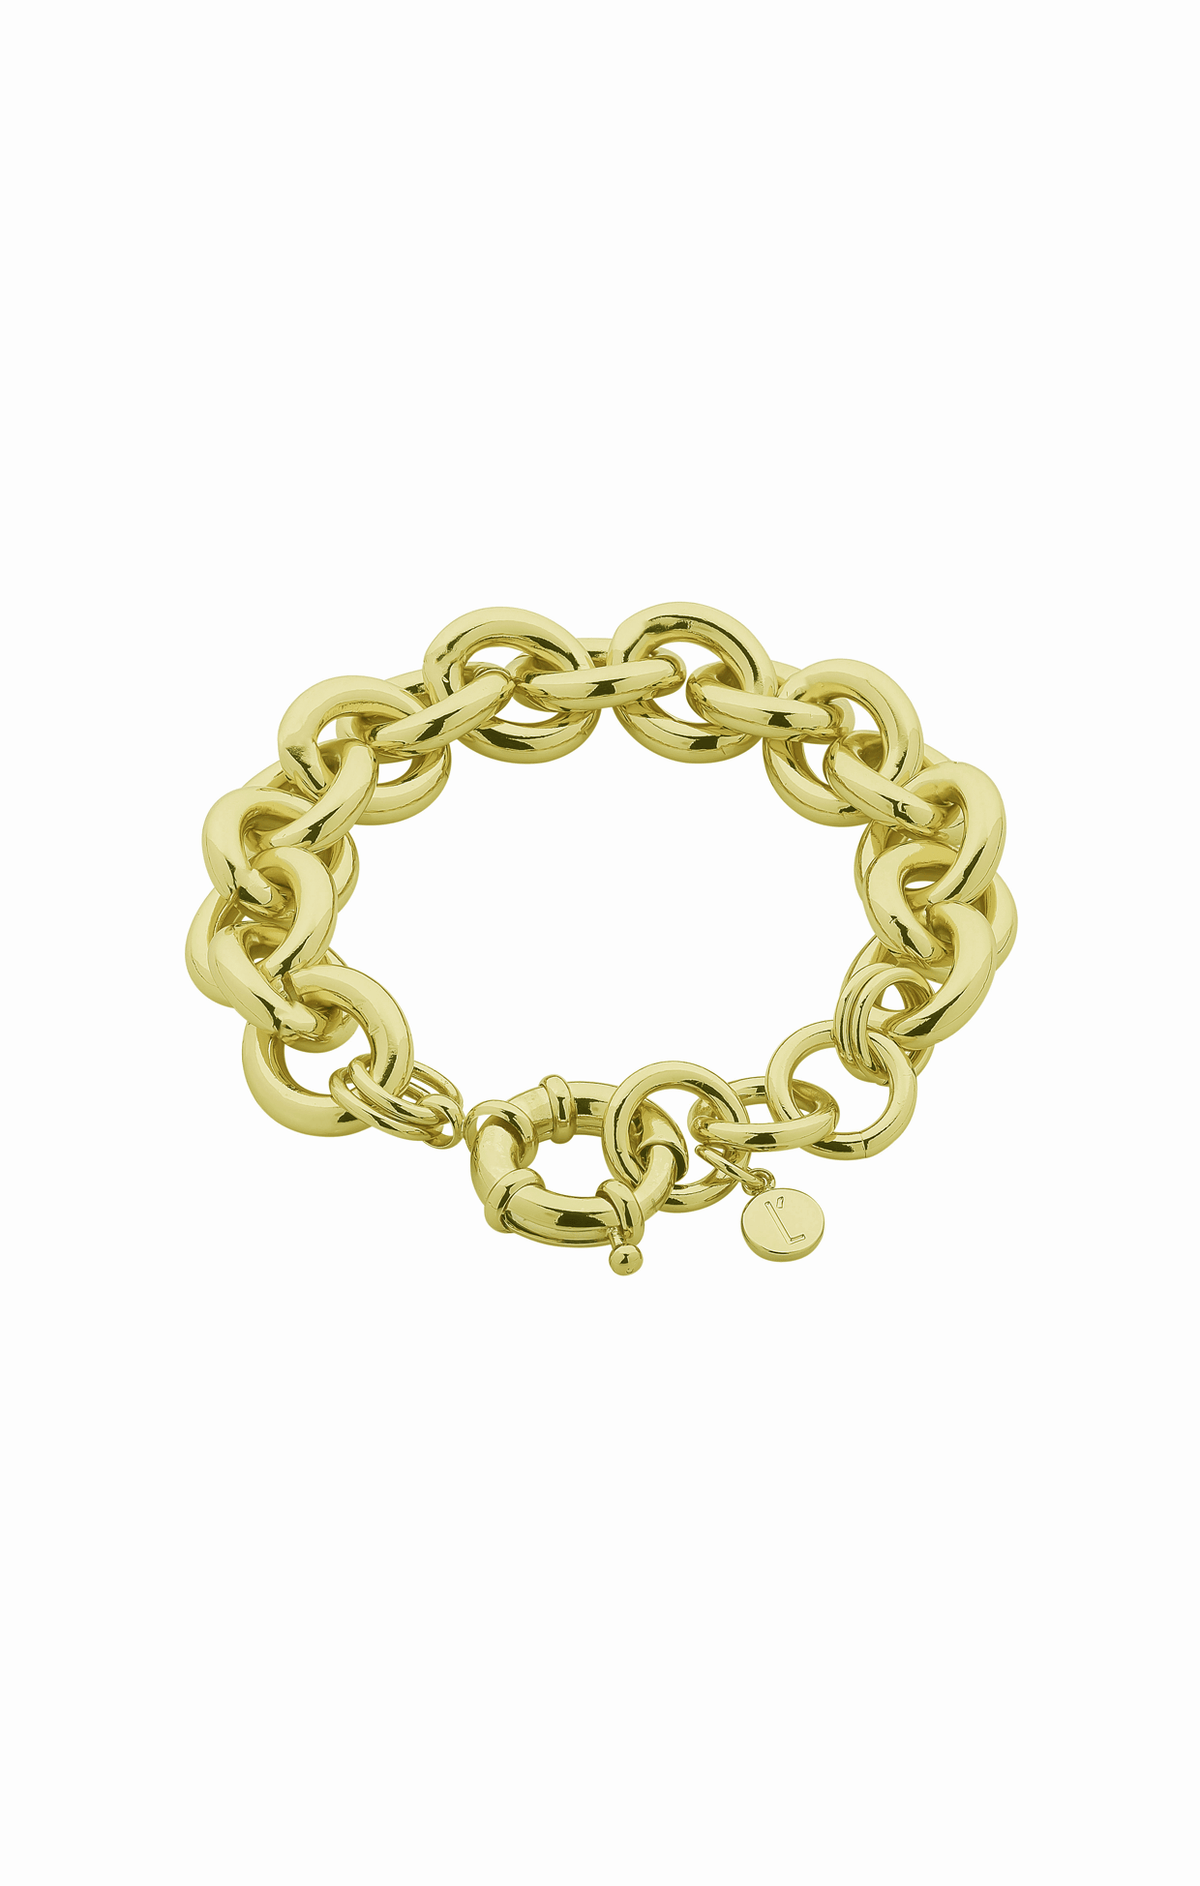 Bracelets OS / GOLD KELLY BRACELET IN GOLD